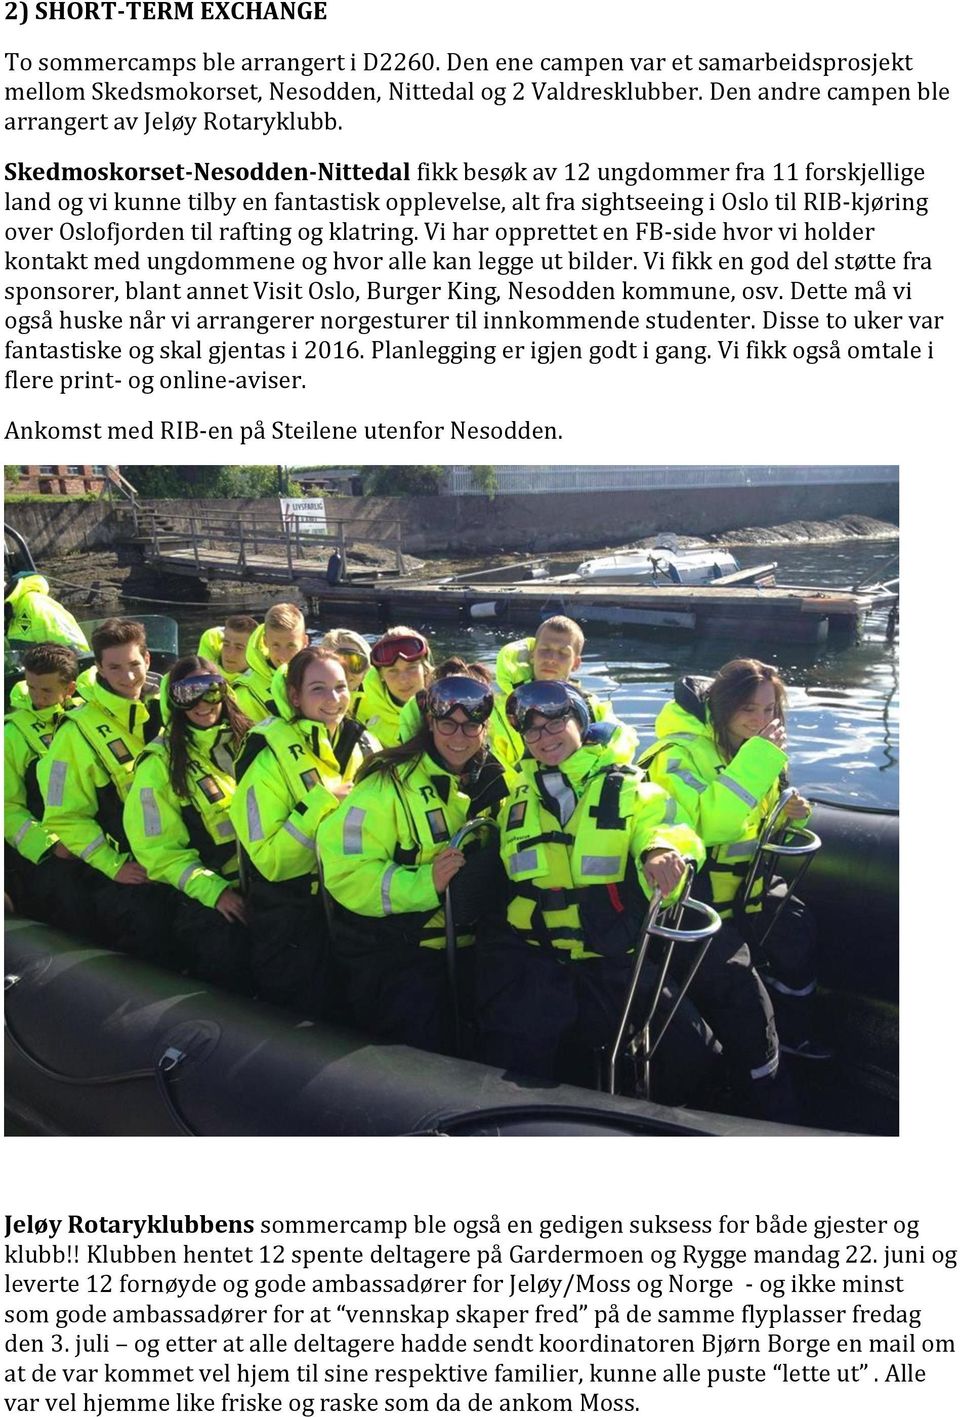 Skedmoskorset-Nesodden-Nittedal fikk besøk av 12 ungdommer fra 11 forskjellige land og vi kunne tilby en fantastisk opplevelse, alt fra sightseeing i Oslo til RIB-kjøring over Oslofjorden til rafting